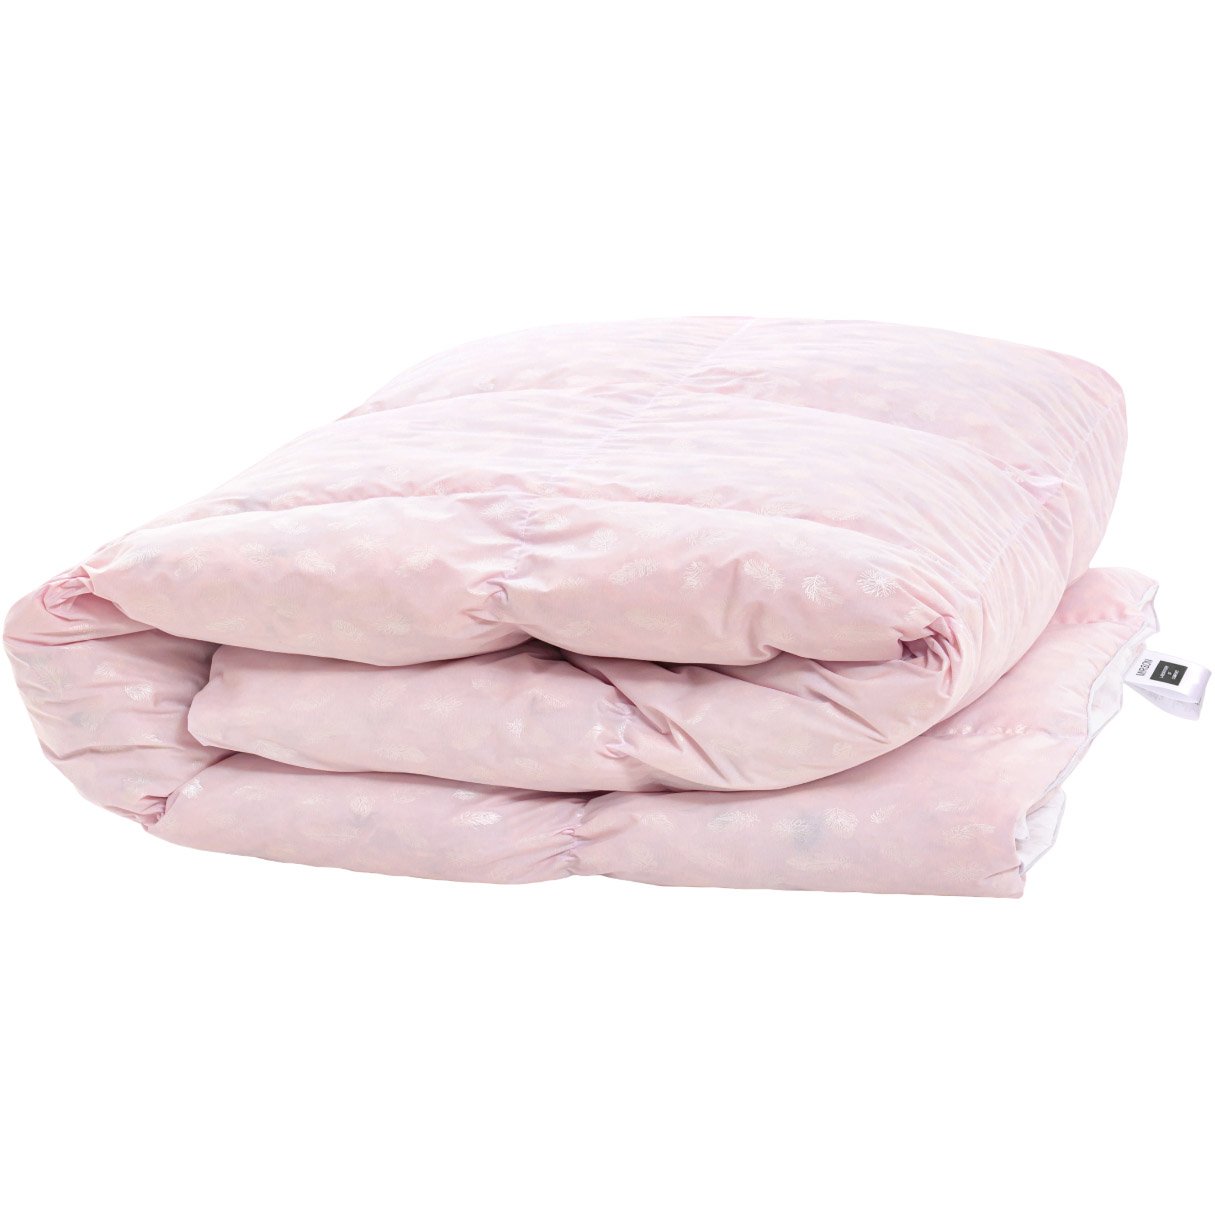 Одеяло пуховое MirSon Karmen №1850 Bio-Pink, 70% пух, king size, 240x220, розовое (2200003014488) - фото 1